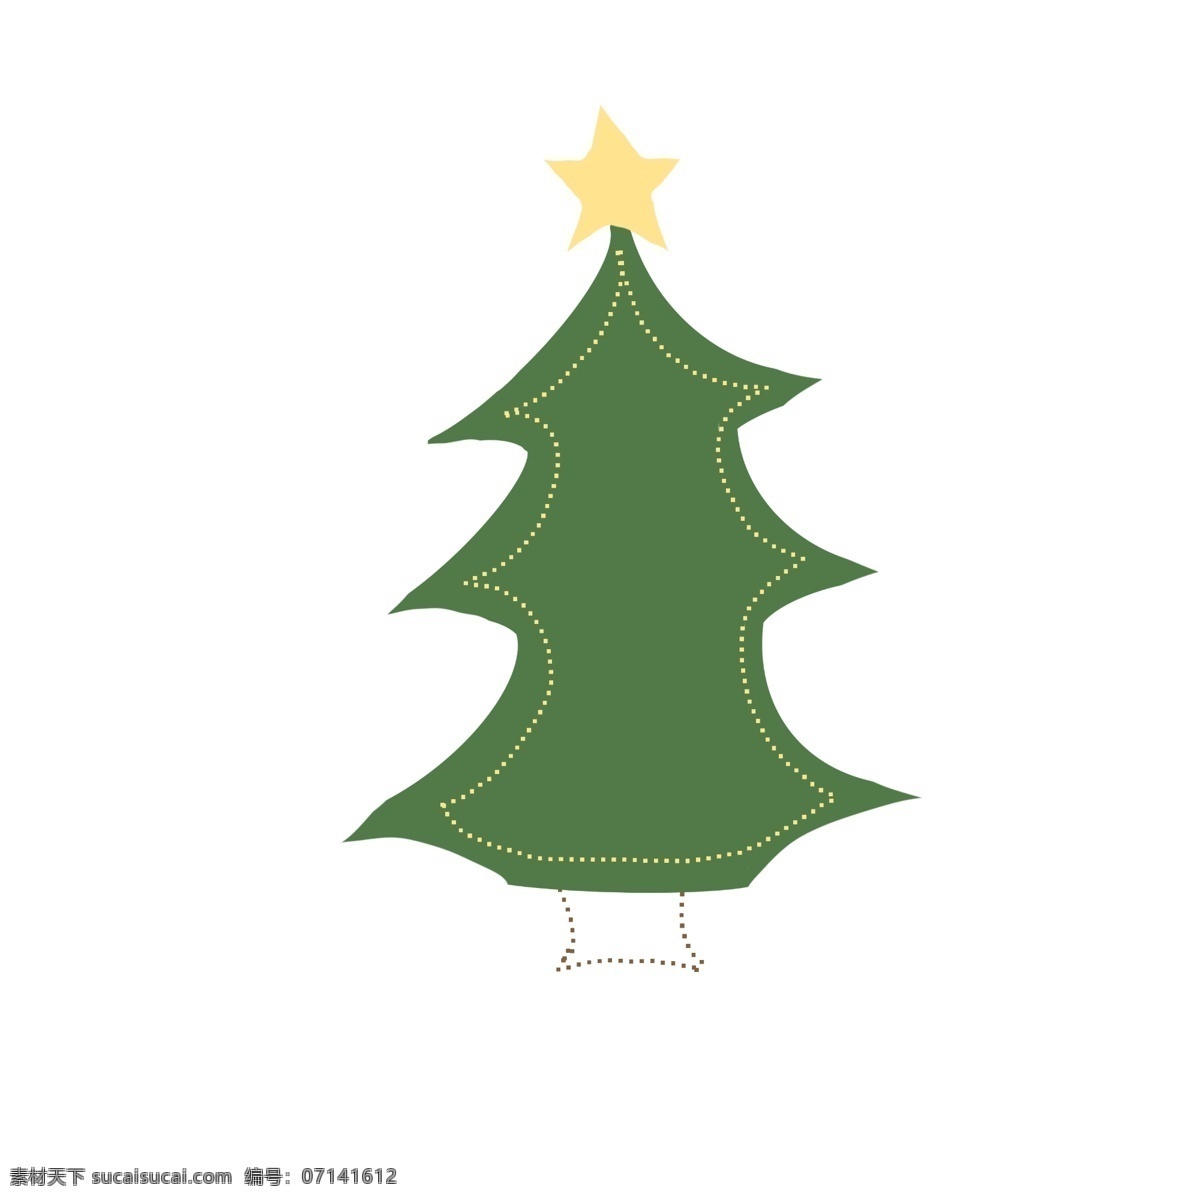 简单 对话框 手绘 圣诞树 可爱 对话款 黄色绿色 简约 框 卡通 圆点 星星 圆形 卡通手绘